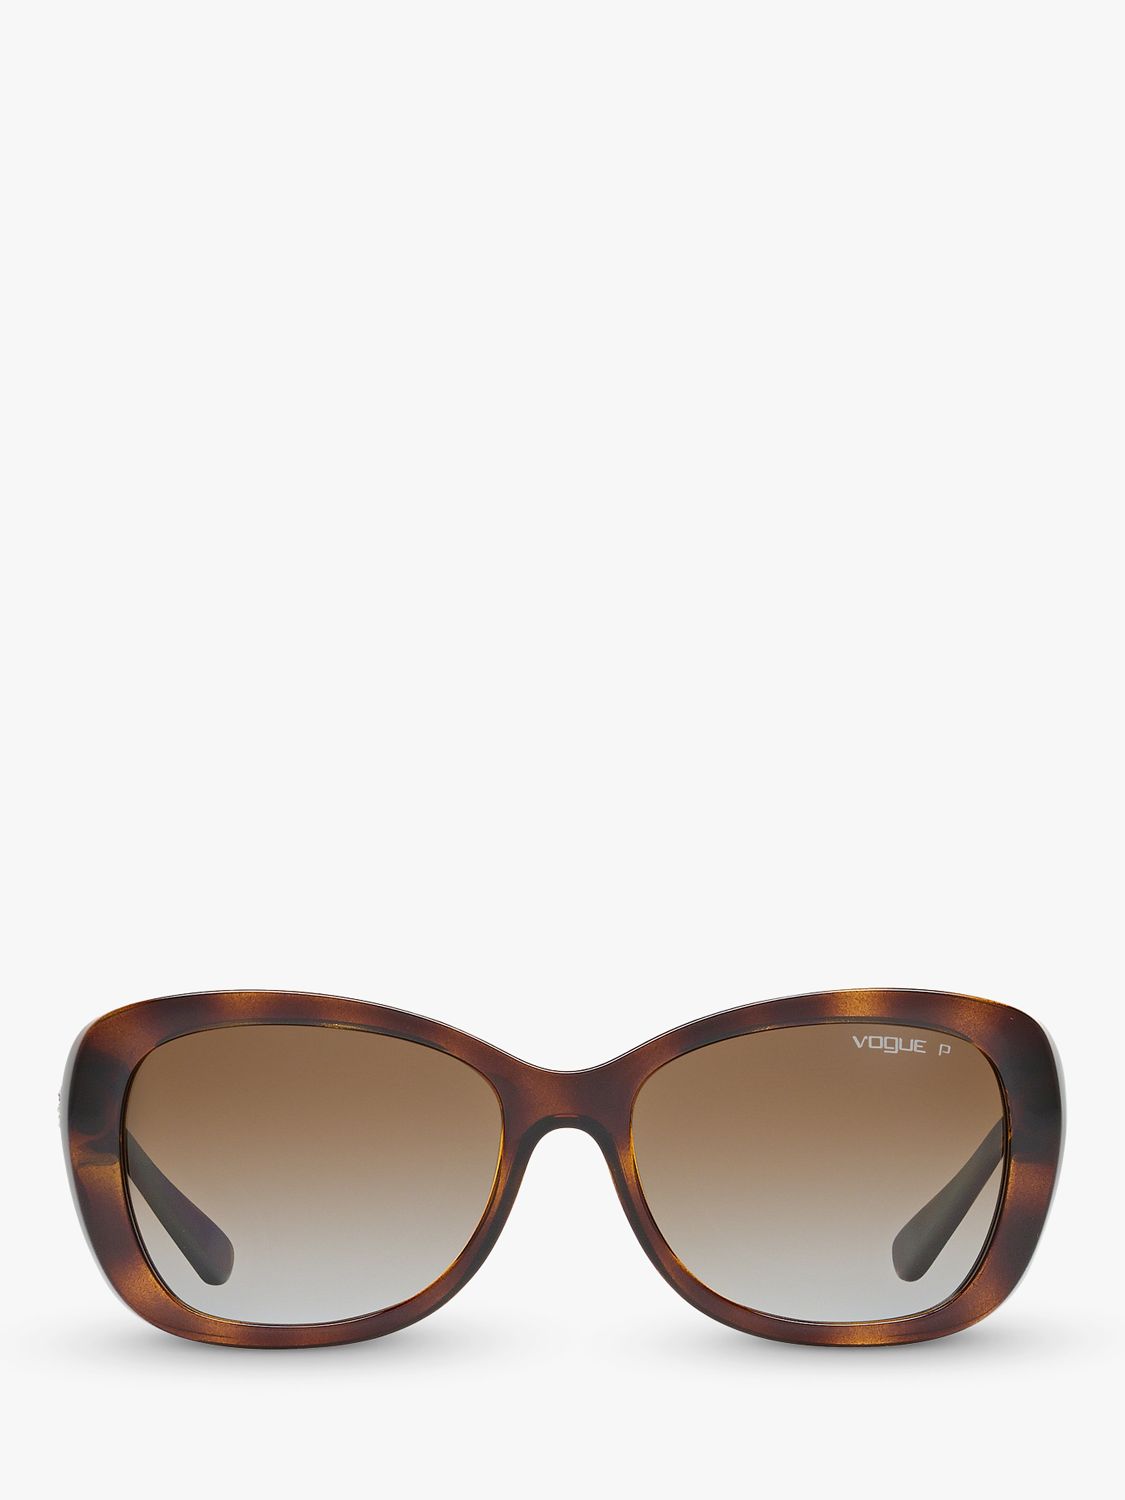 Vogue VO2943SB Women's Polarised Butterfly Sunglasses, Dark Tortoise/Brown Gradient